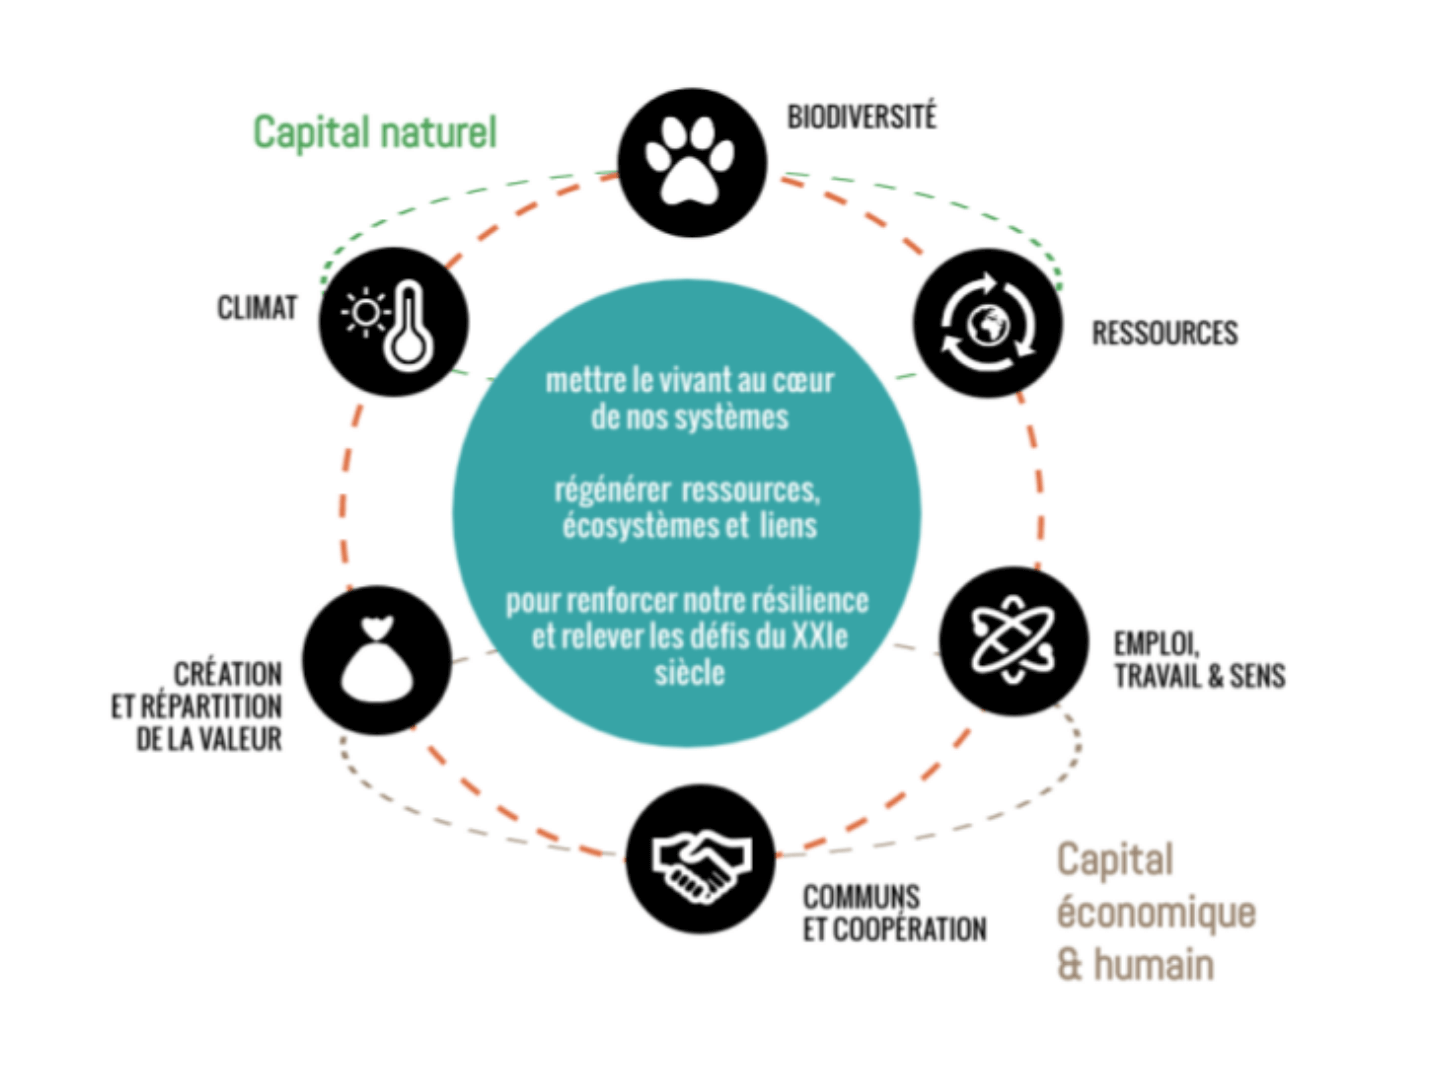 La régénération, capital économique et humain